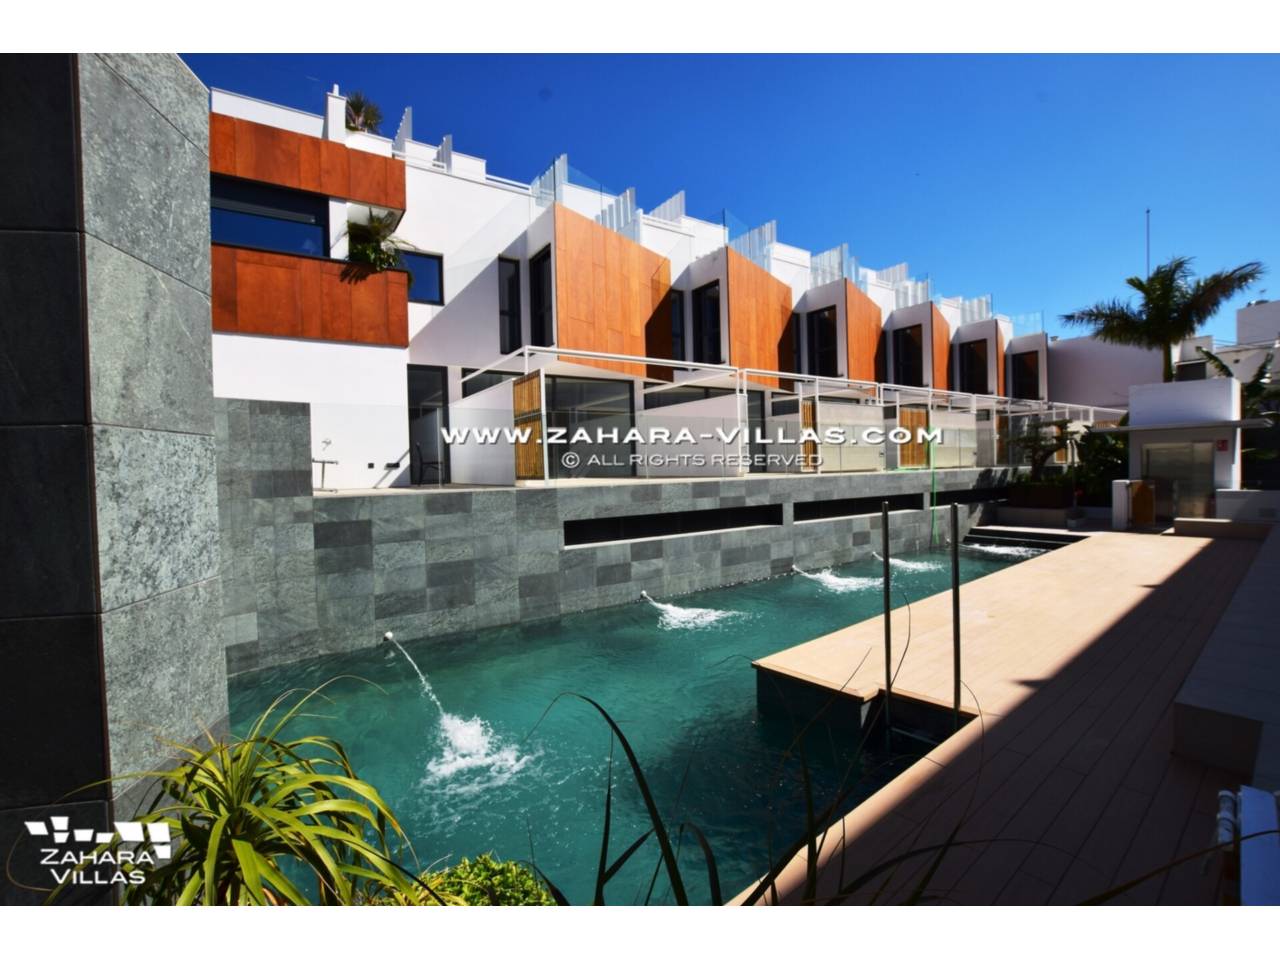 Imagen 25 de  Promoción obra nueva terminada "EL OASIS DE ZAHARA" viviendas adosadas junto al mar